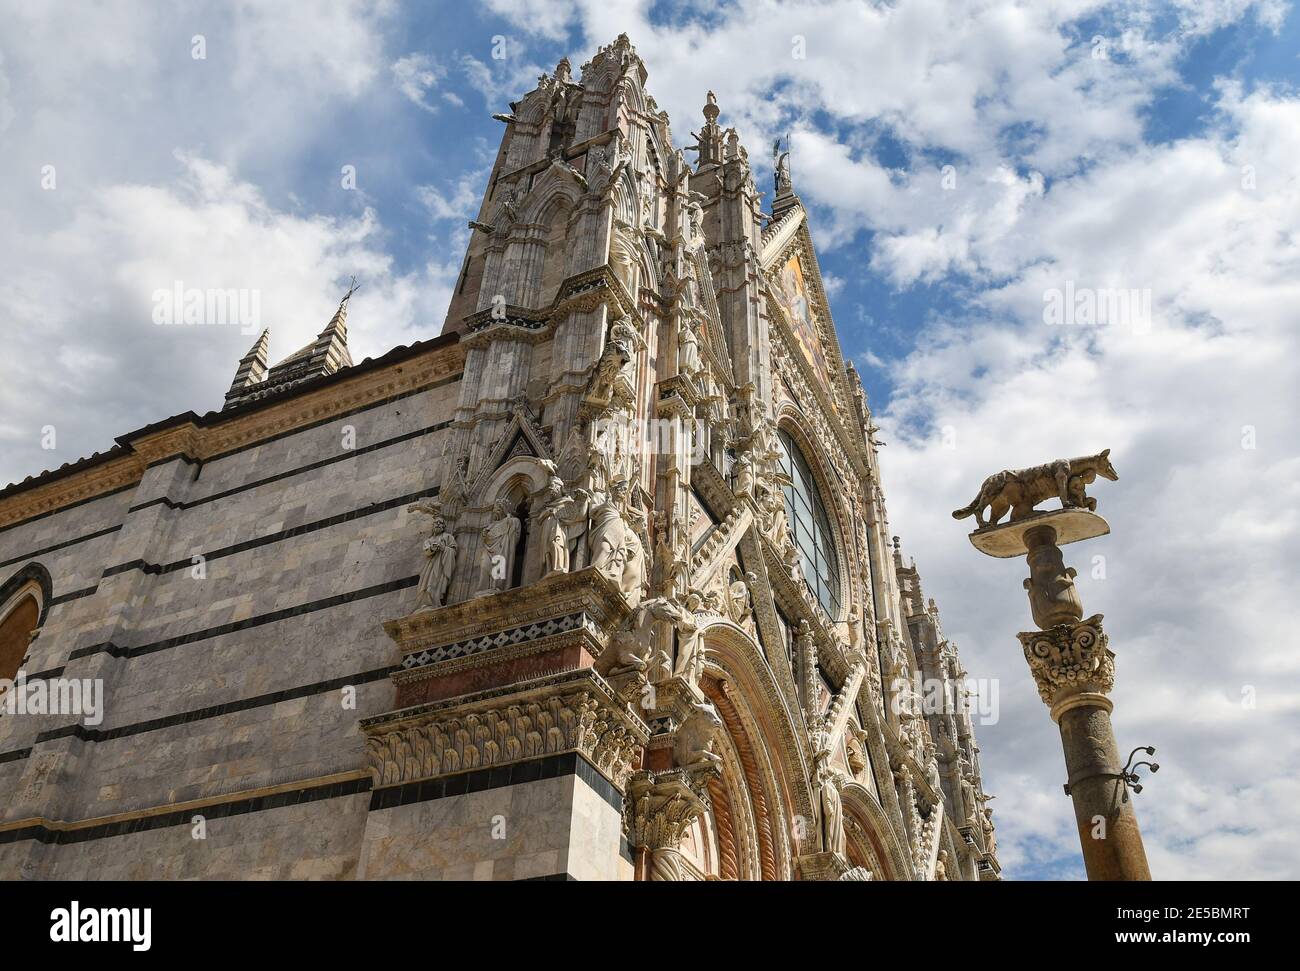 Côté gauche de la cathédrale de Sienne (Sainte Marie de l'Assomption) de style roman-gothique avec le loup siennois sur une colonne, Toscane, Italie Banque D'Images